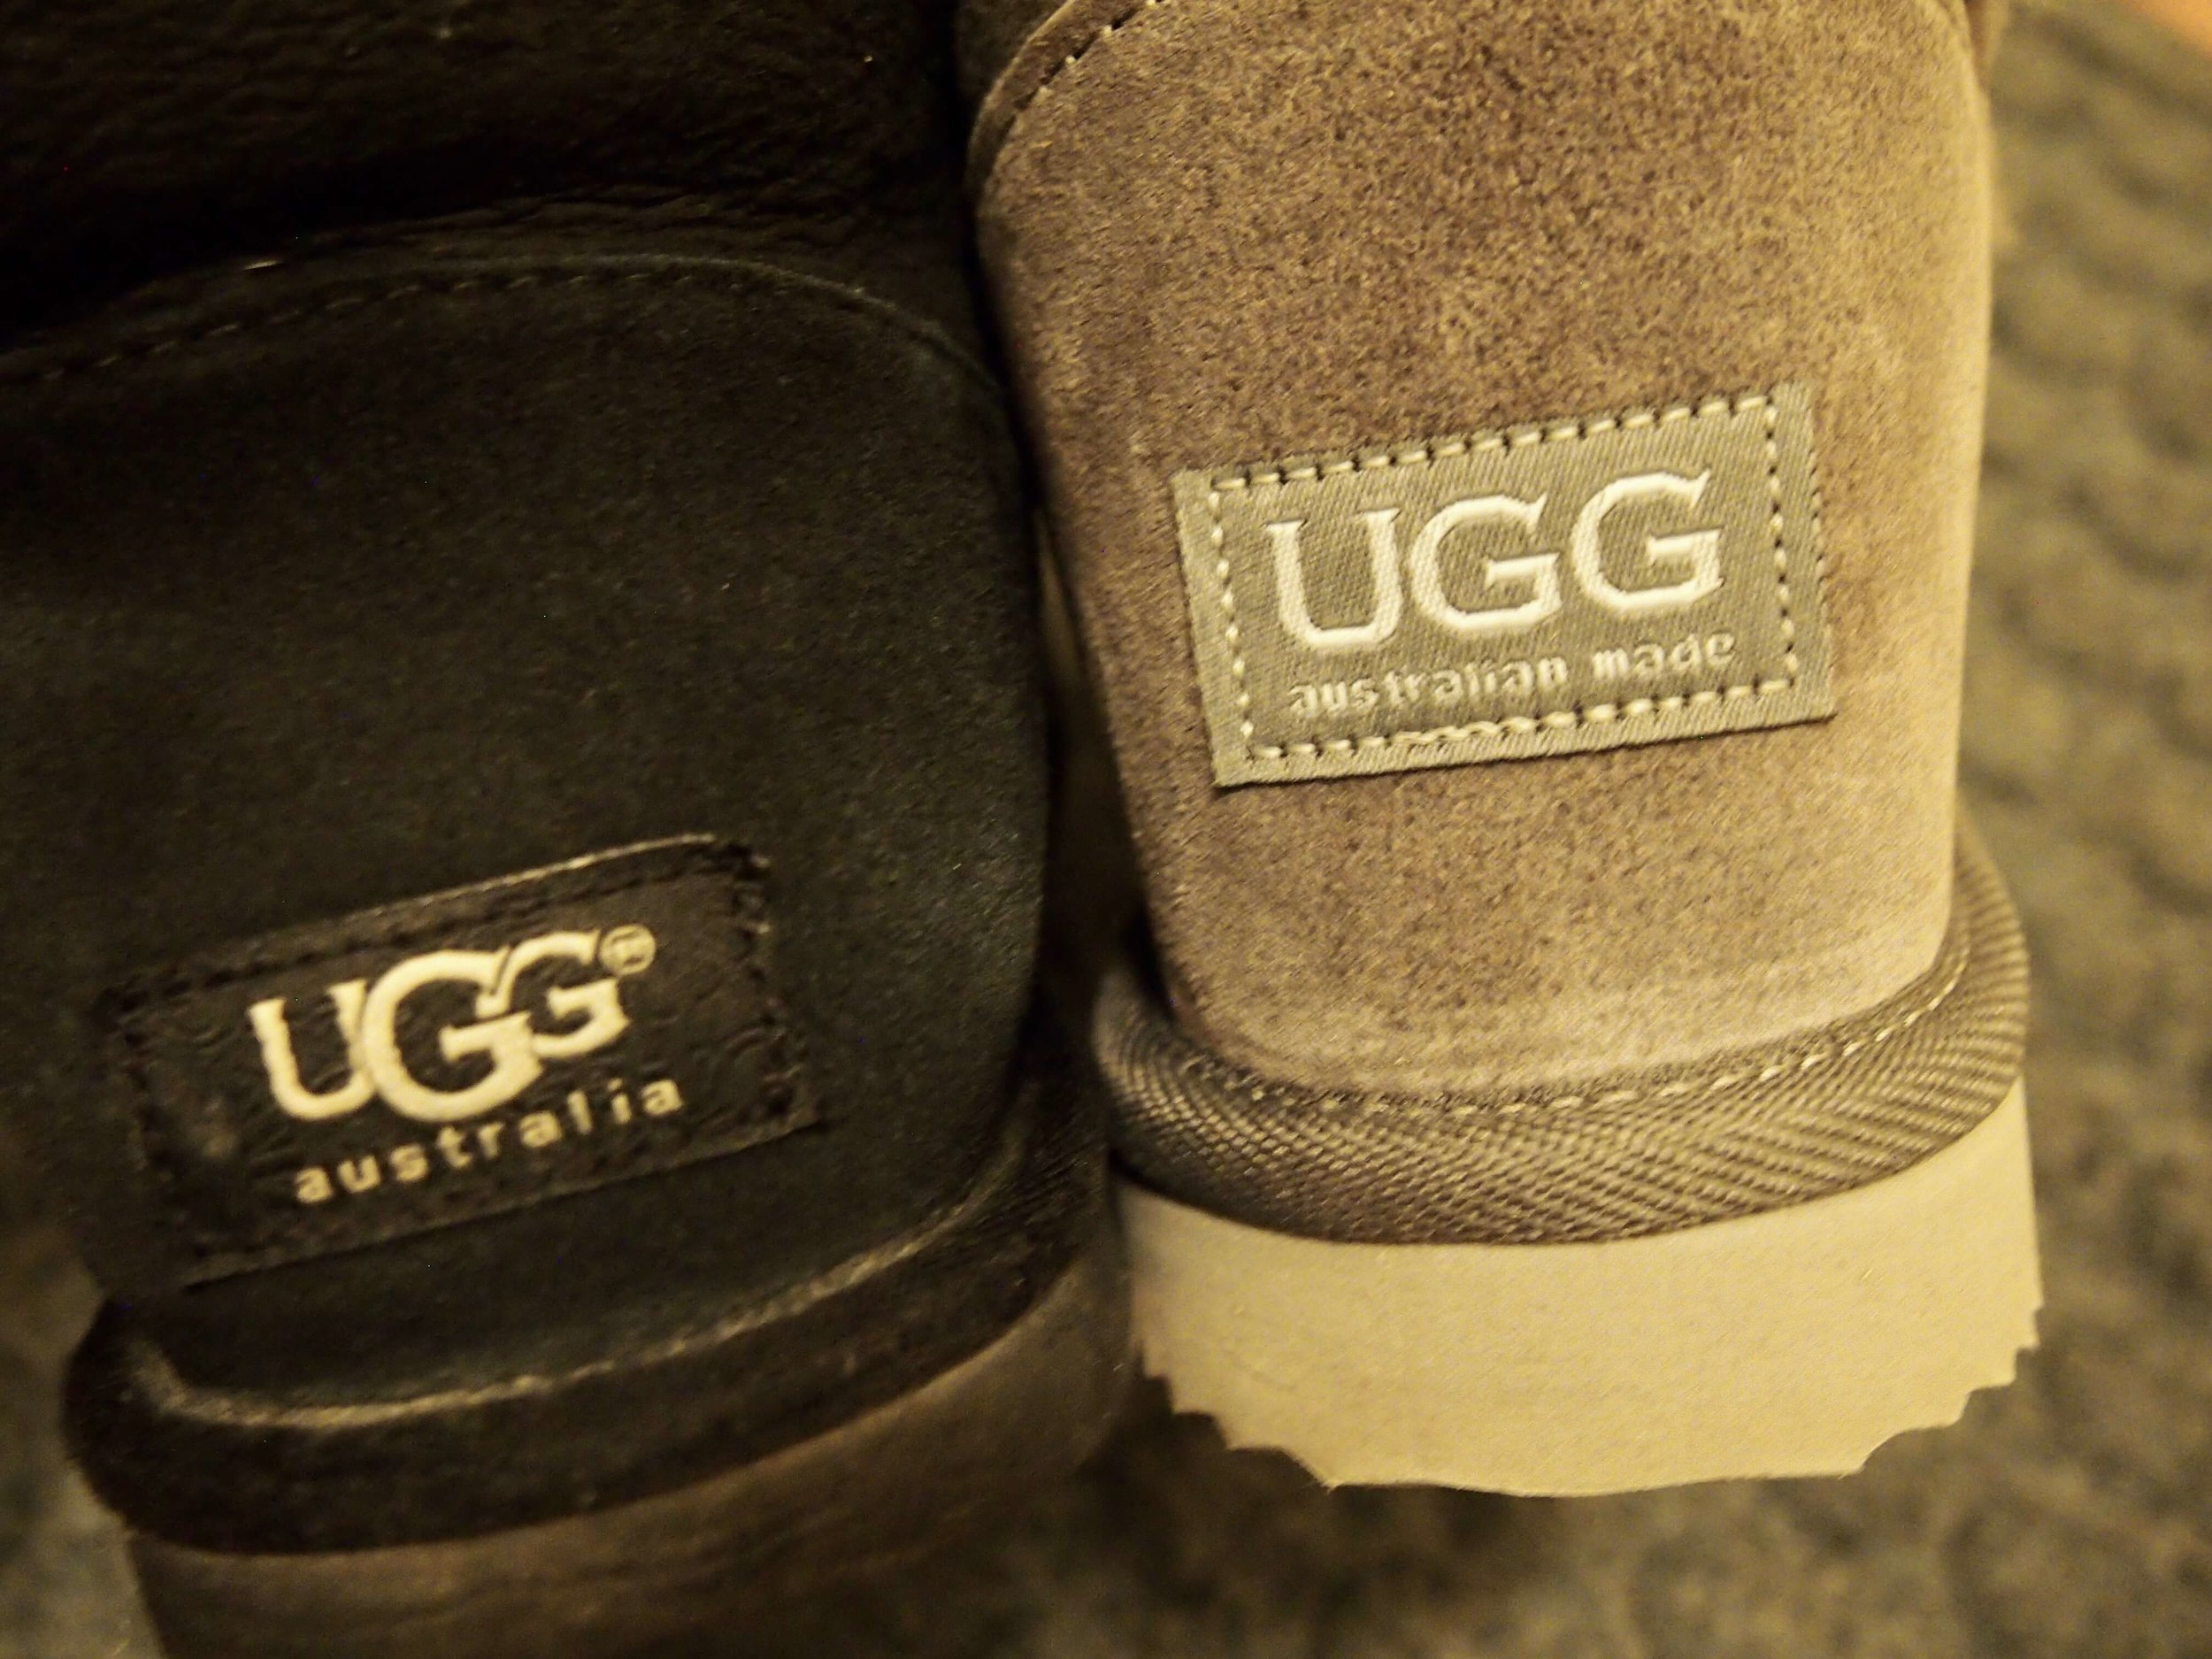 Ugg Australian Made Since 1974を初めて使ってみる アメリカ産のugg Australiaとの違いは りすと私と暮らし